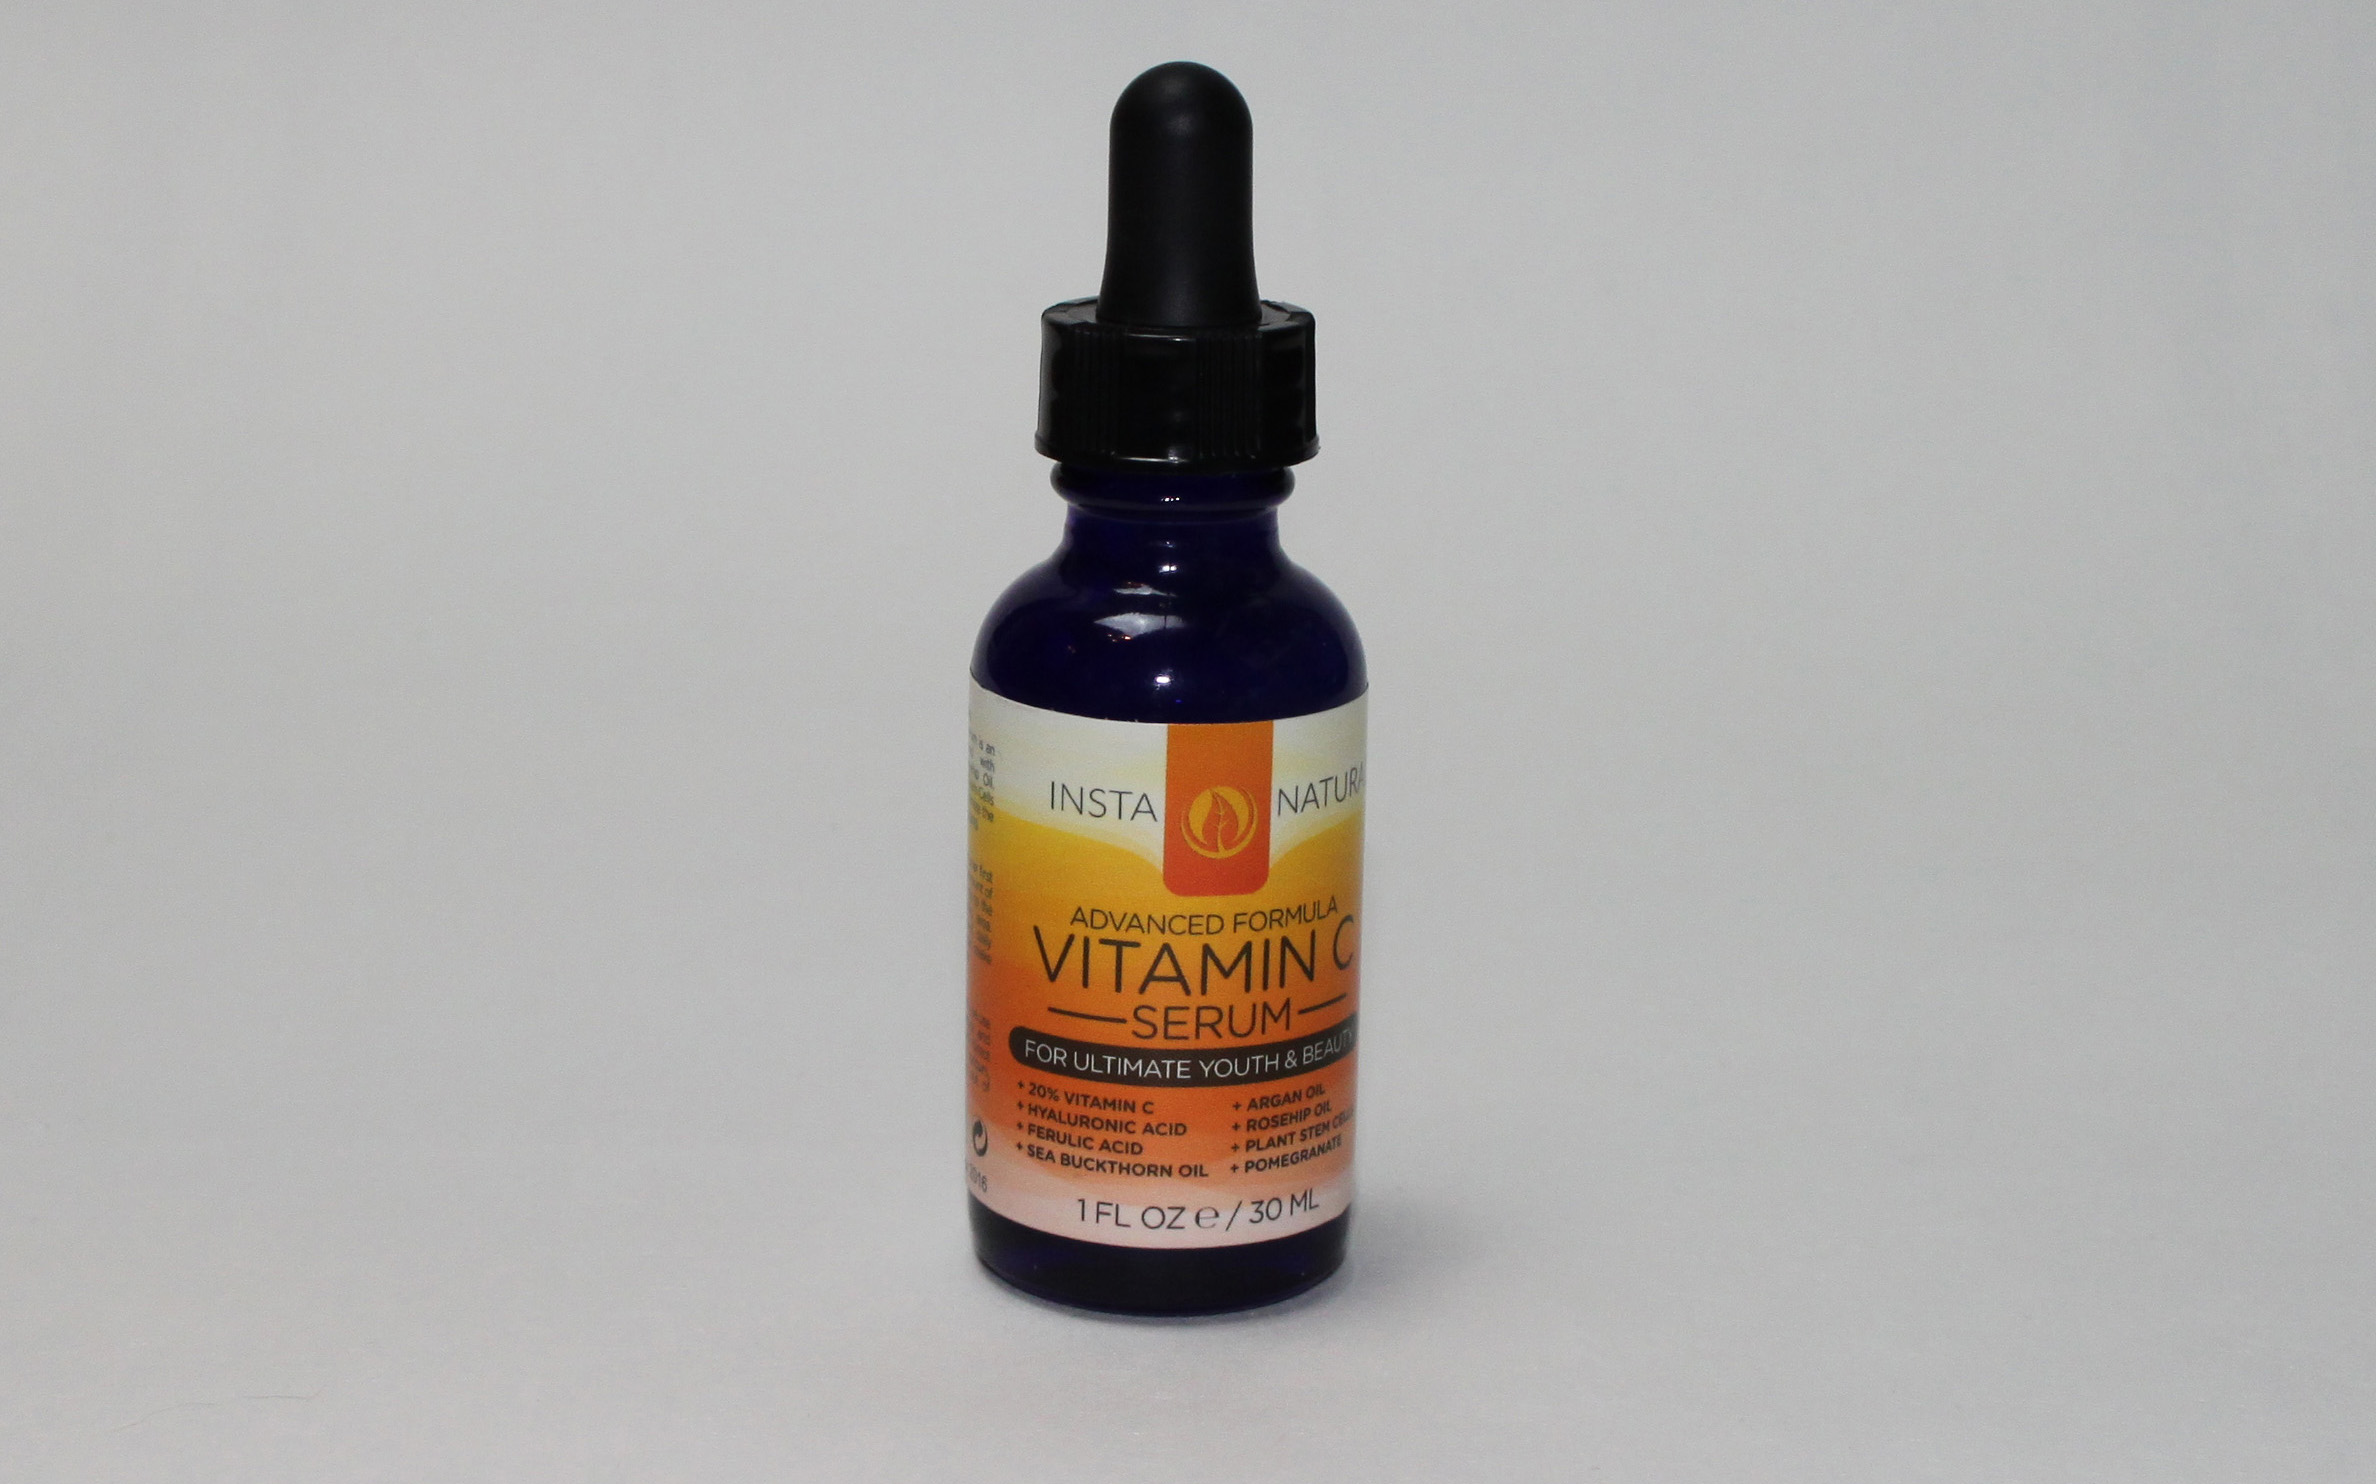 Pflegeroutine am Morgen - Insta Natural Vitamin C Serum